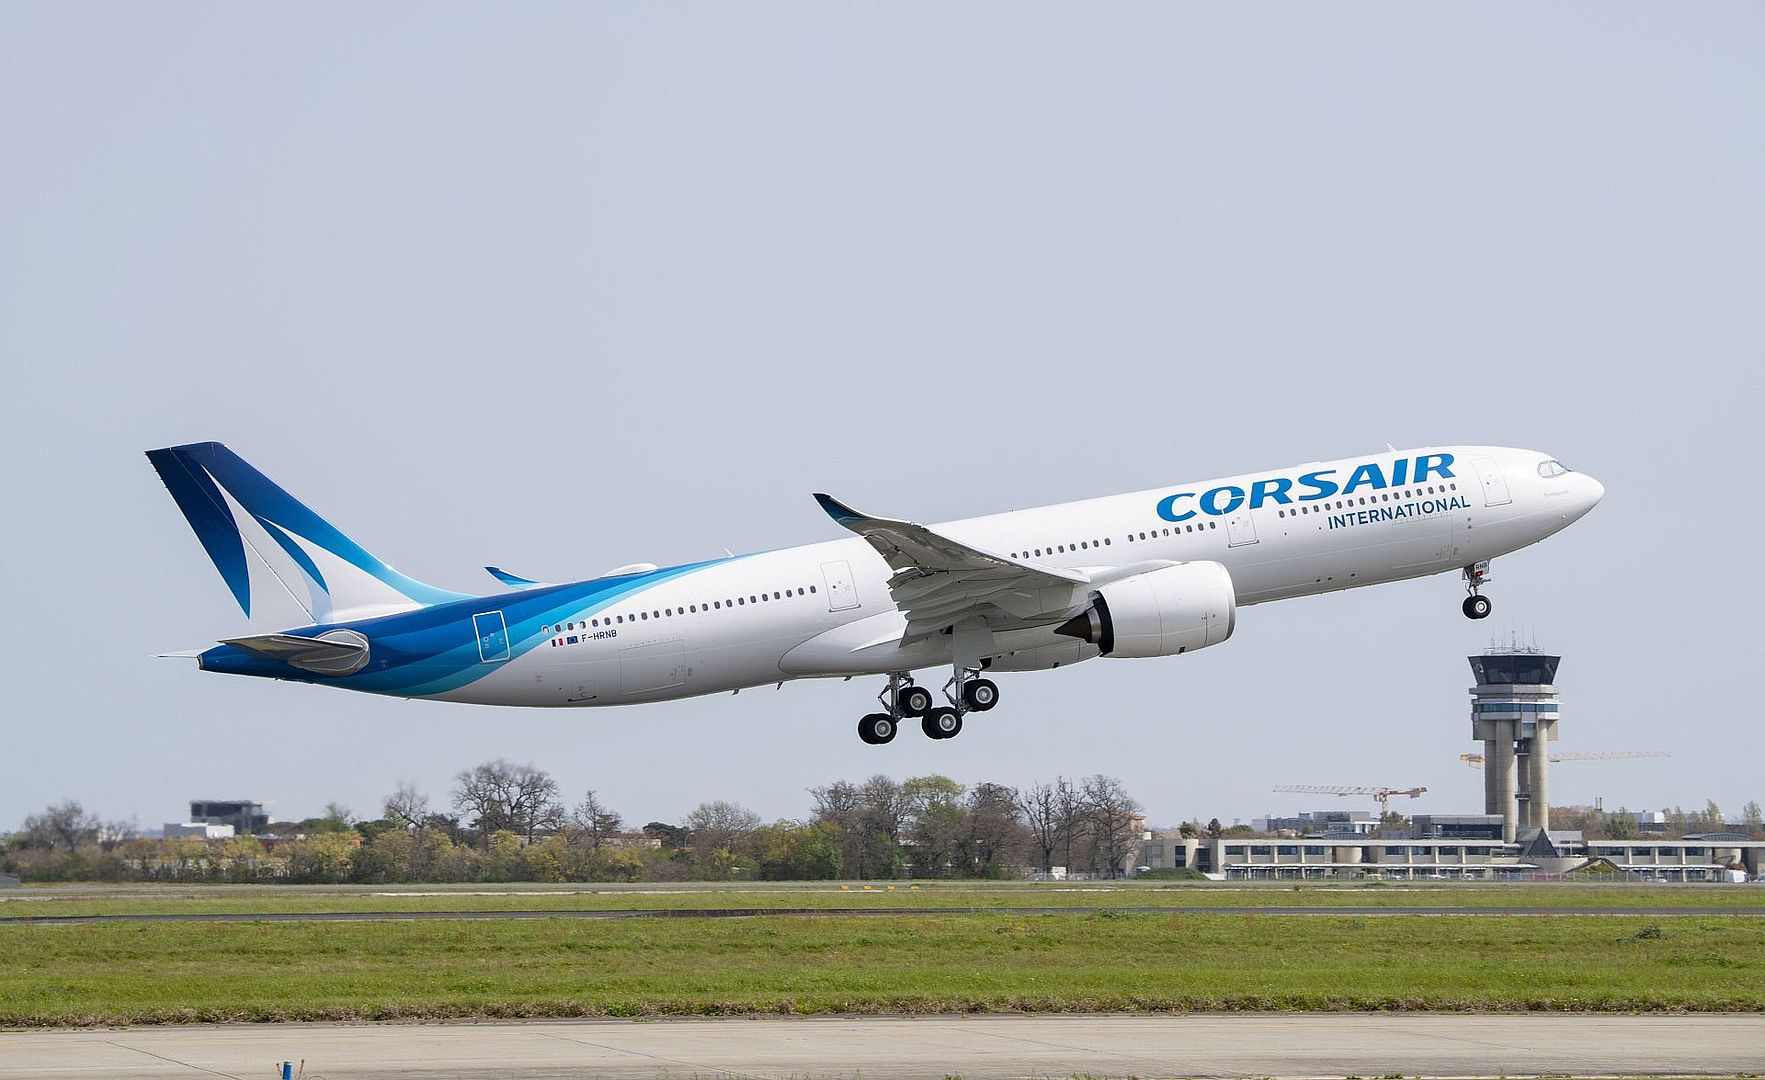 Corsair S First A330neo